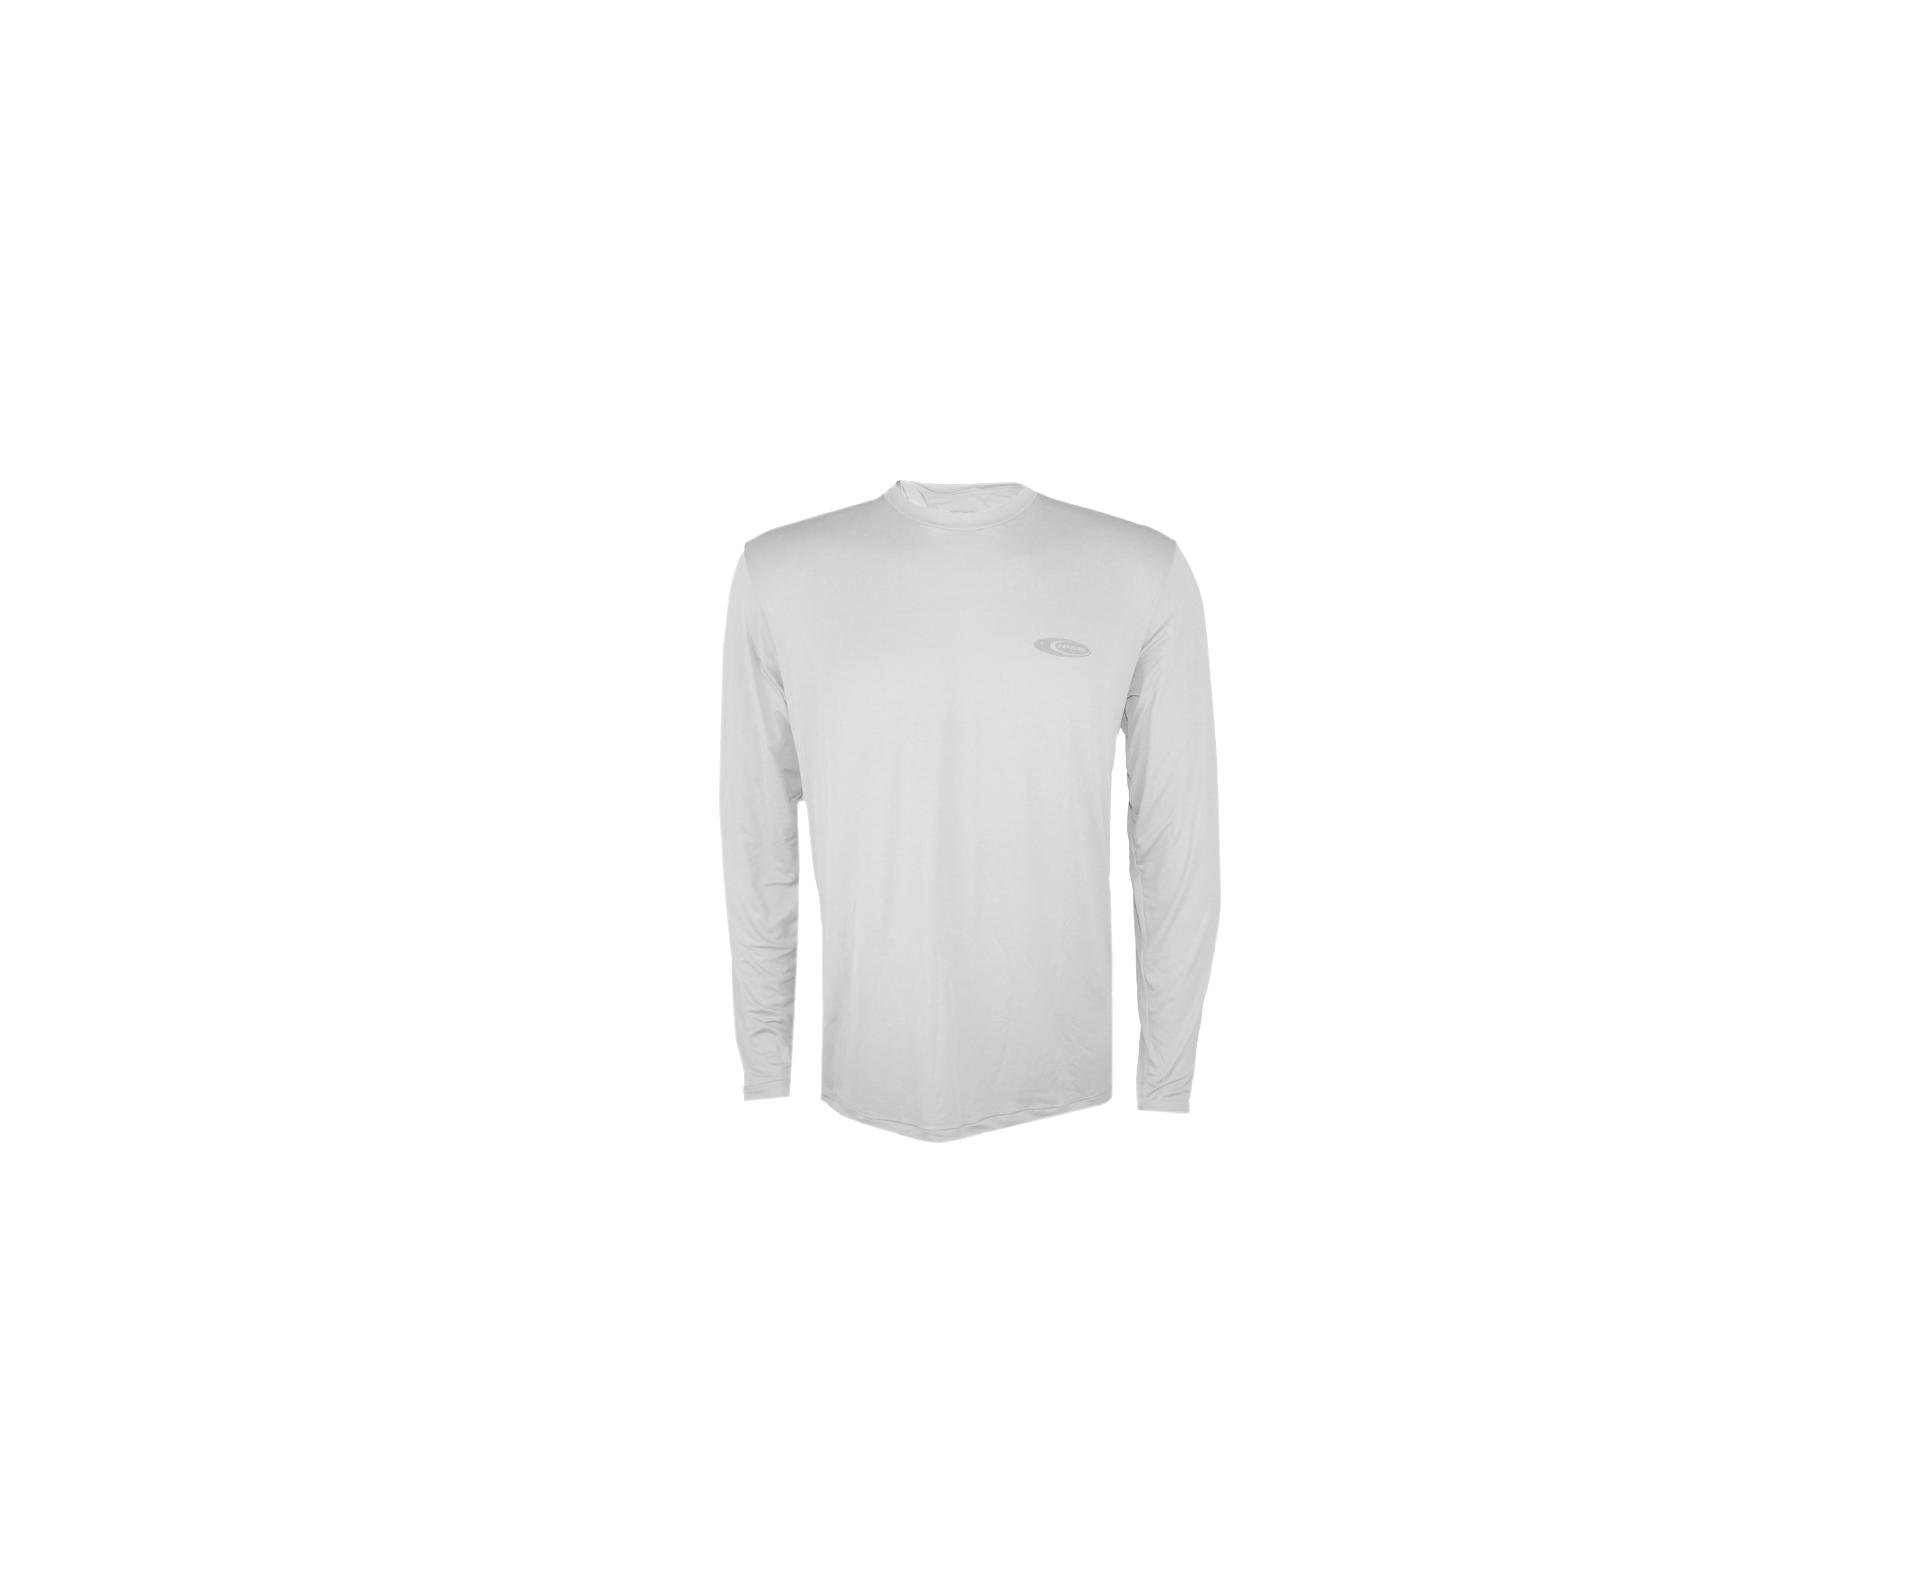 Camiseta Softline Branca - Proteção Uva/uvb 50+ Fps - Cardume - GG